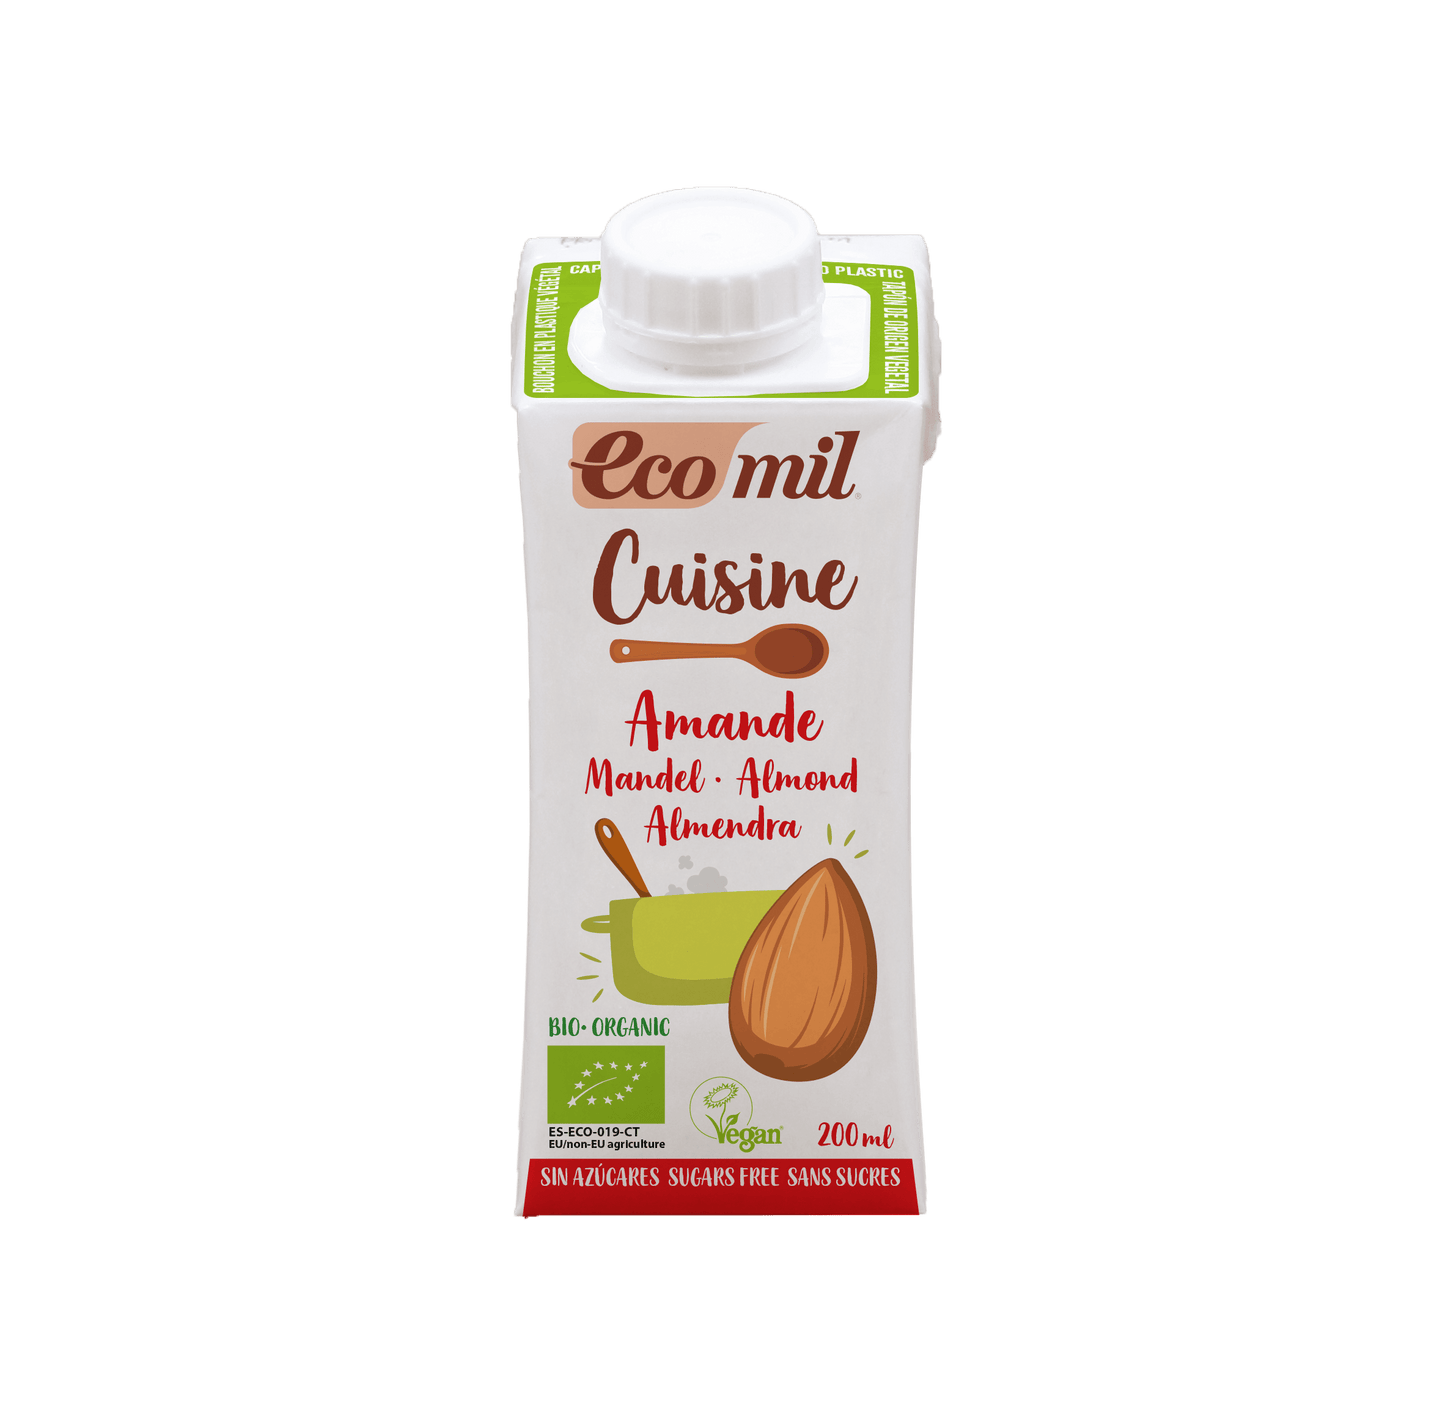 Ecomil Mandel Cuisine zuckerfrei 200ml